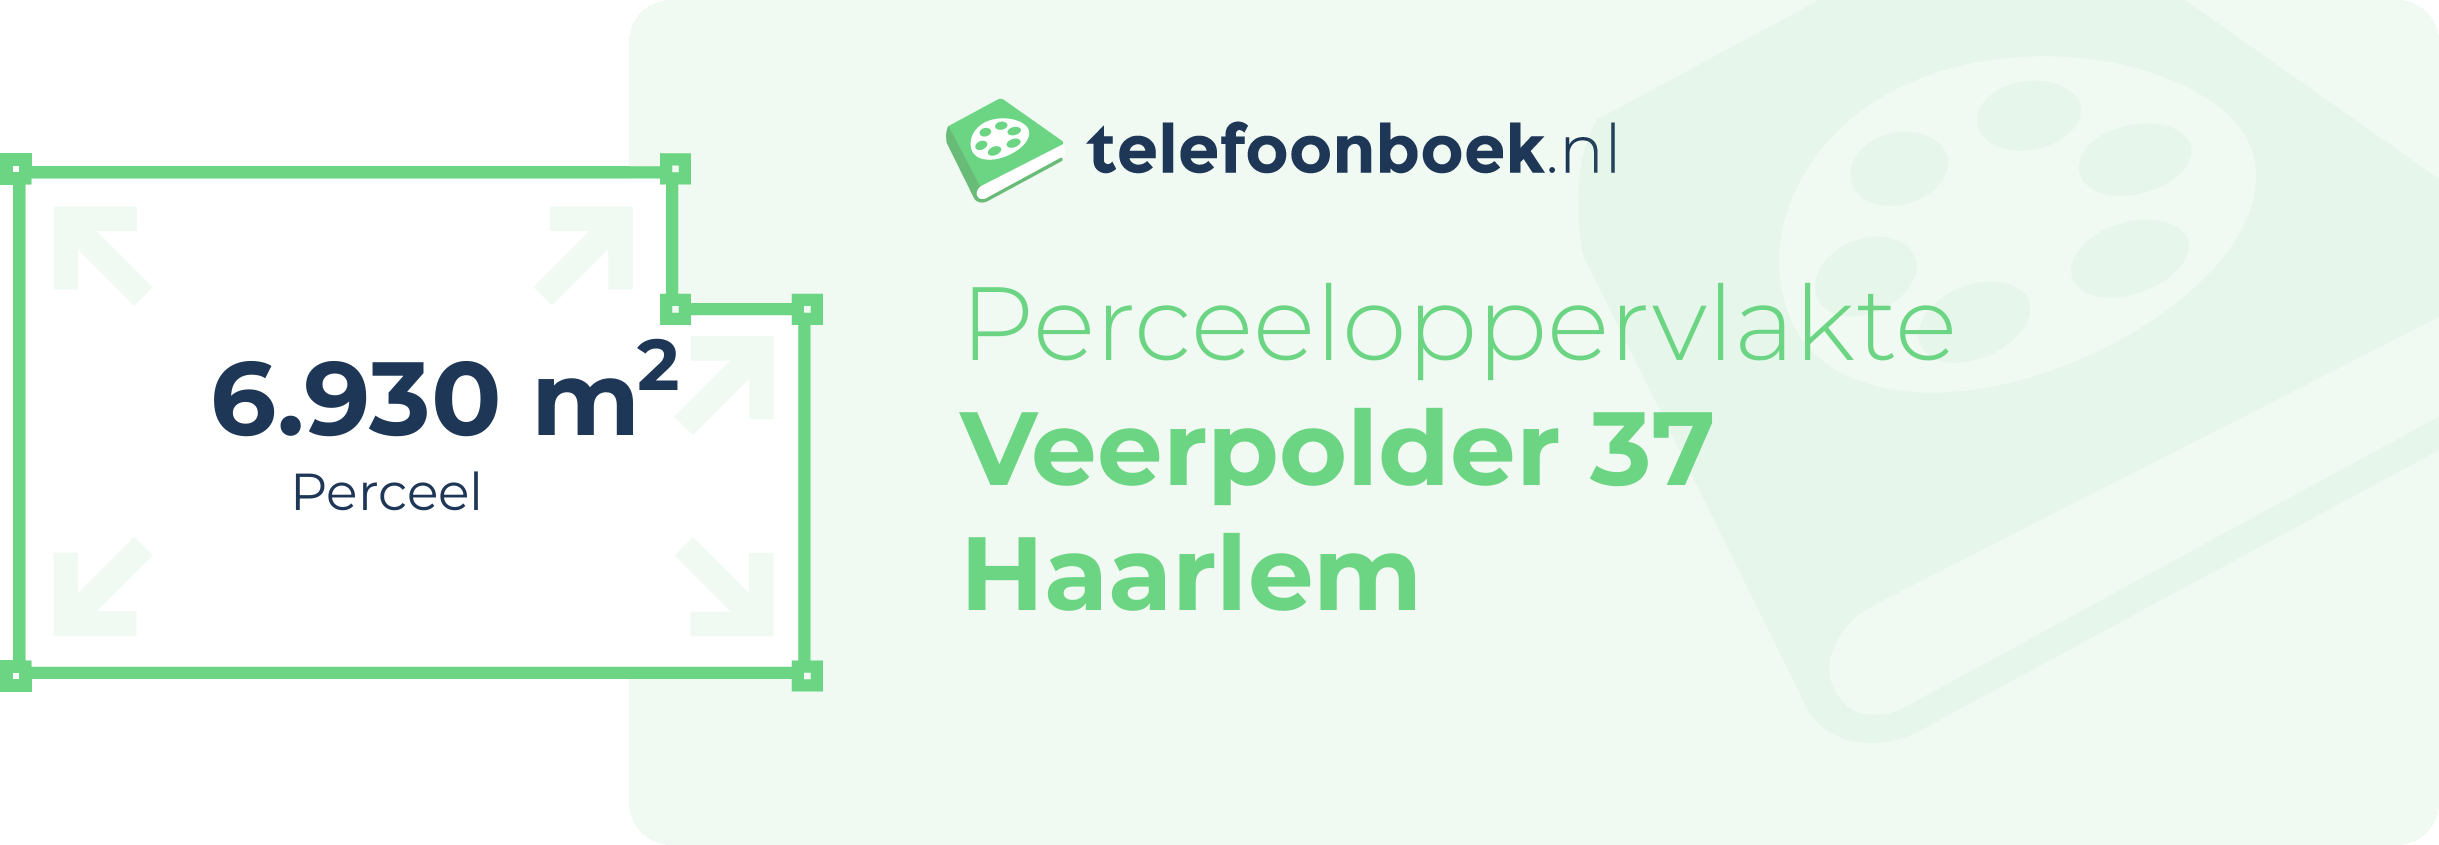 Perceeloppervlakte Veerpolder 37 Haarlem